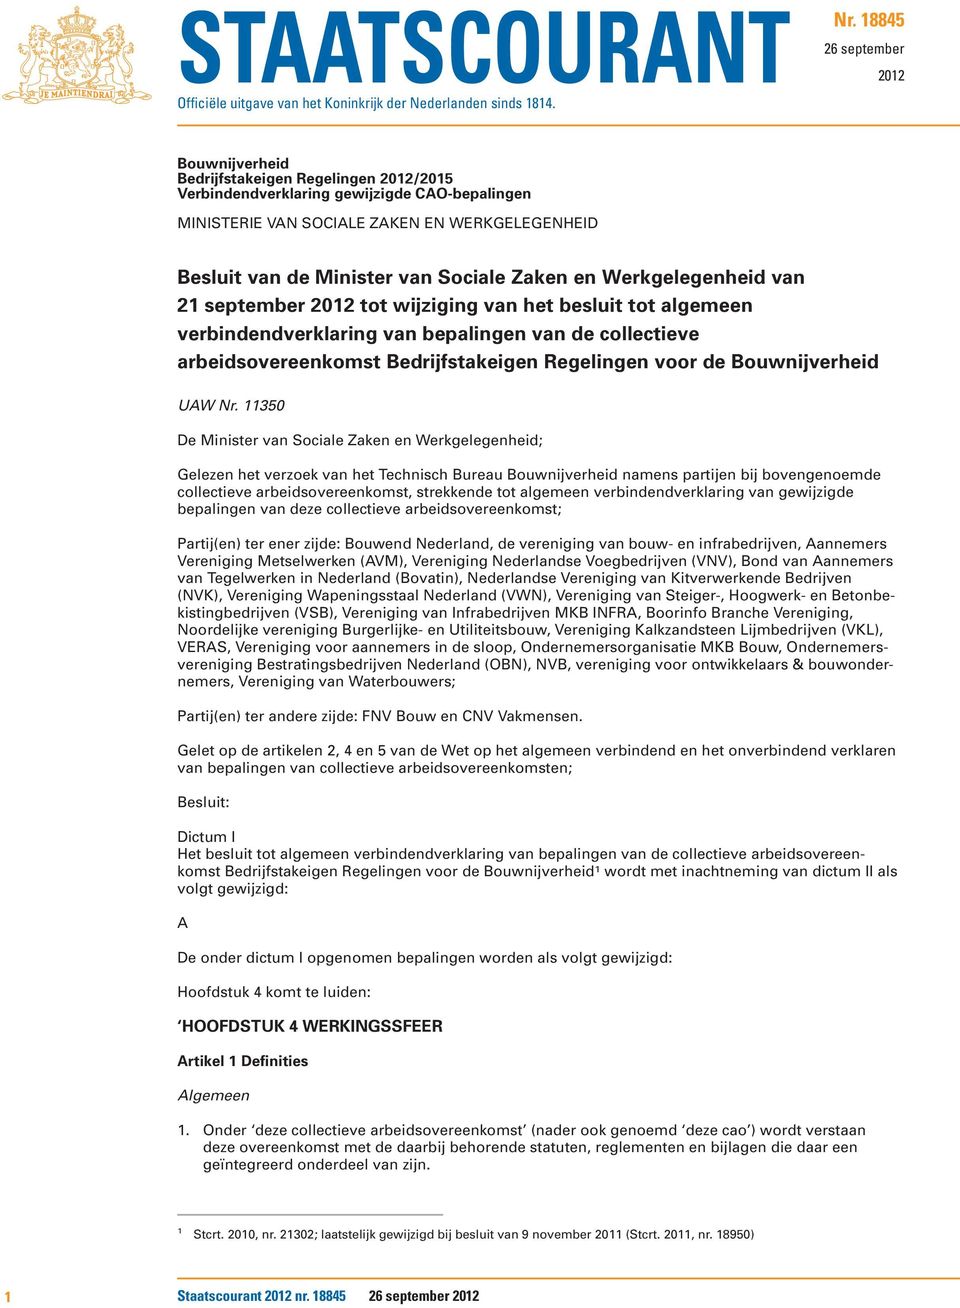 Sociale Zaken en Werkgelegenheid van 21 september 2012 tot wijziging van het besluit tot algemeen verbindendverklaring van bepalingen van de collectieve arbeidsovereenkomst Bedrijfstakeigen